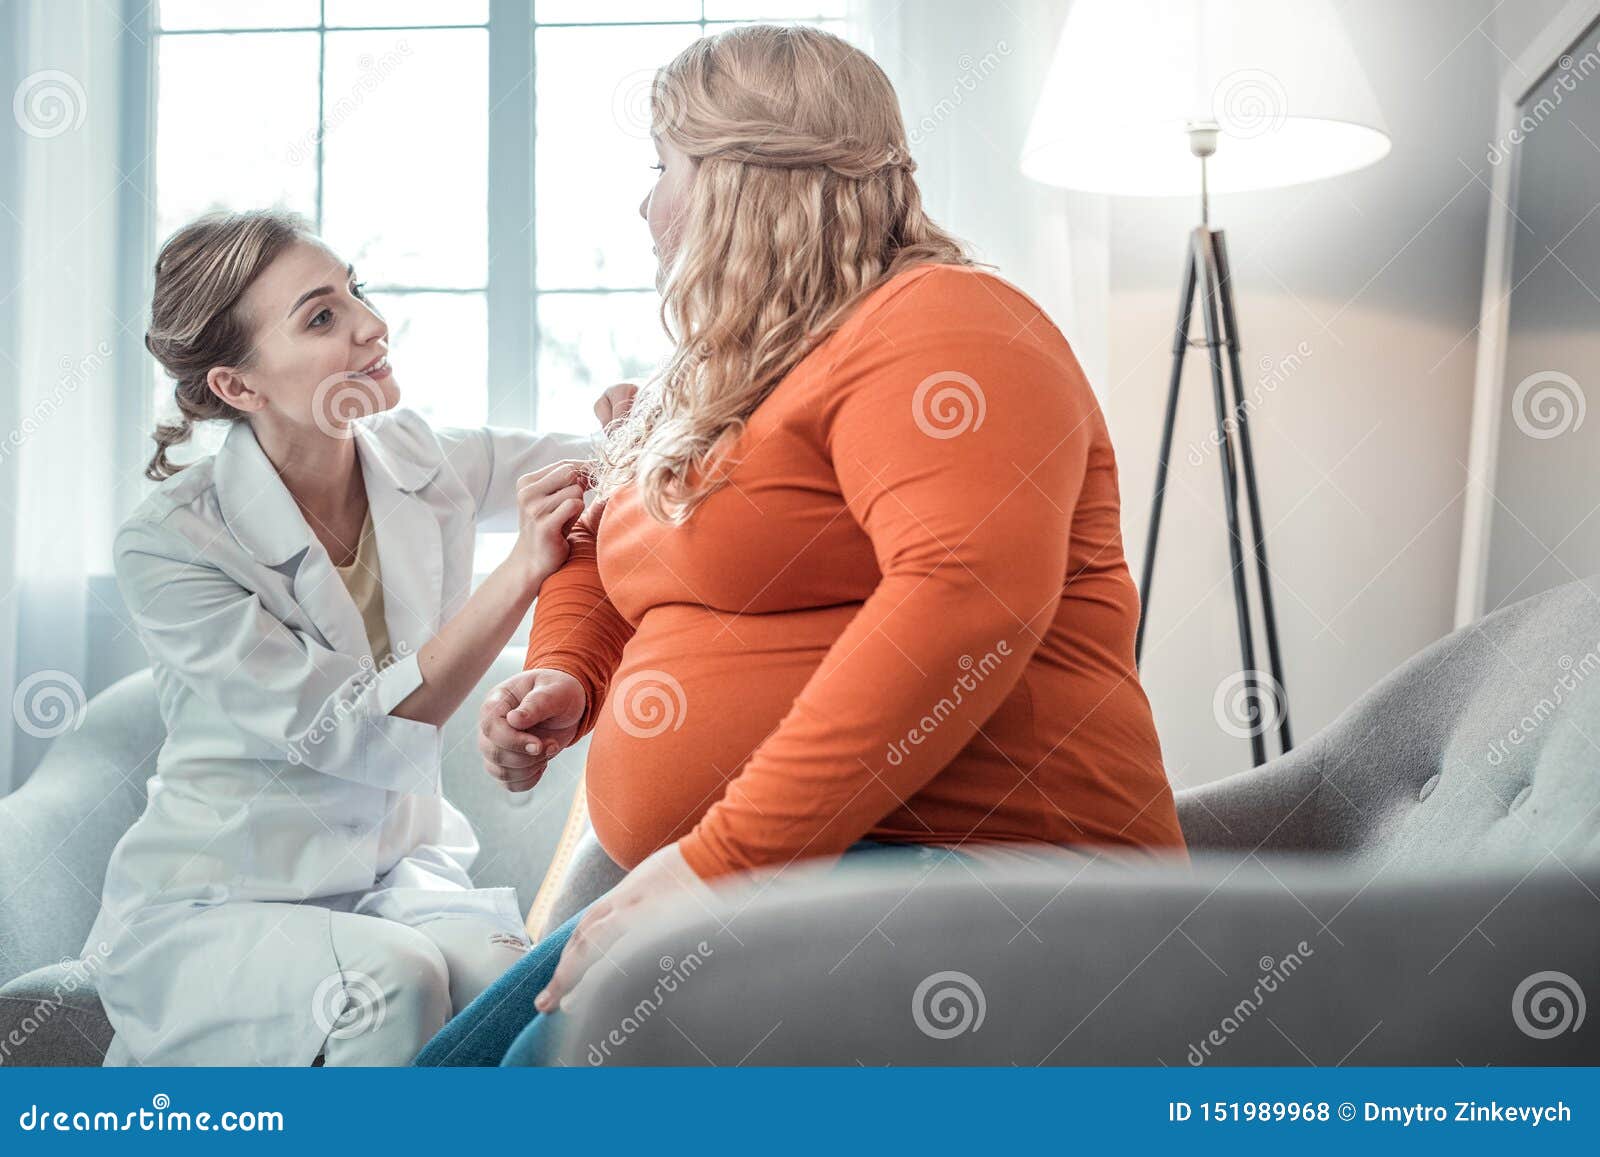 Εύθυμο νέο θηλυκό πρόσωπο που μιλά στο γιατρό της